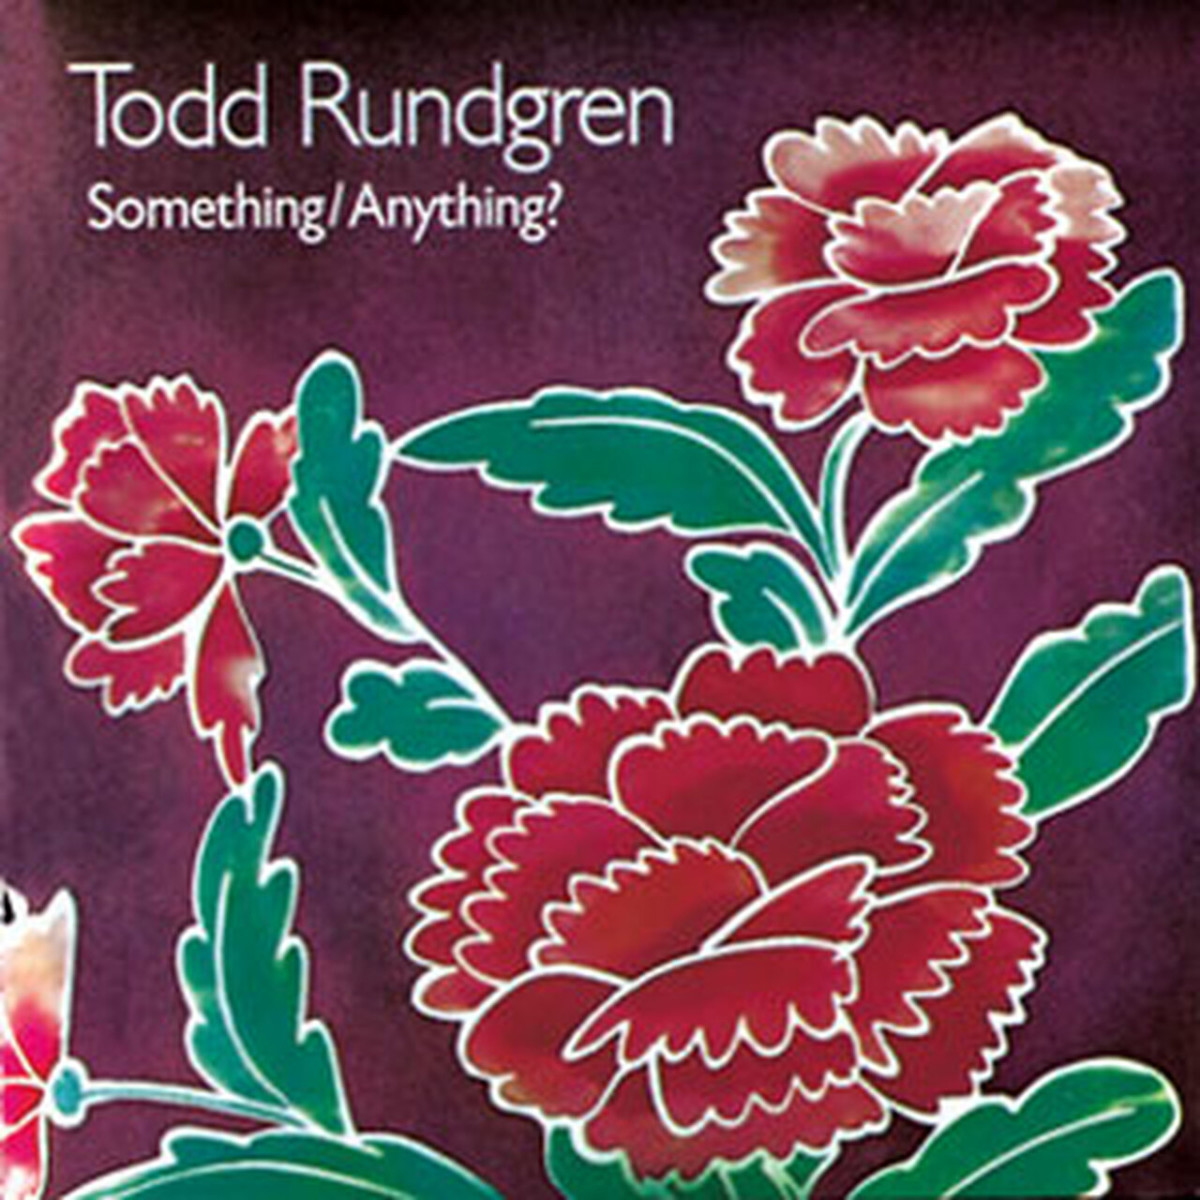 Todd Rundgren - Something:Anything 